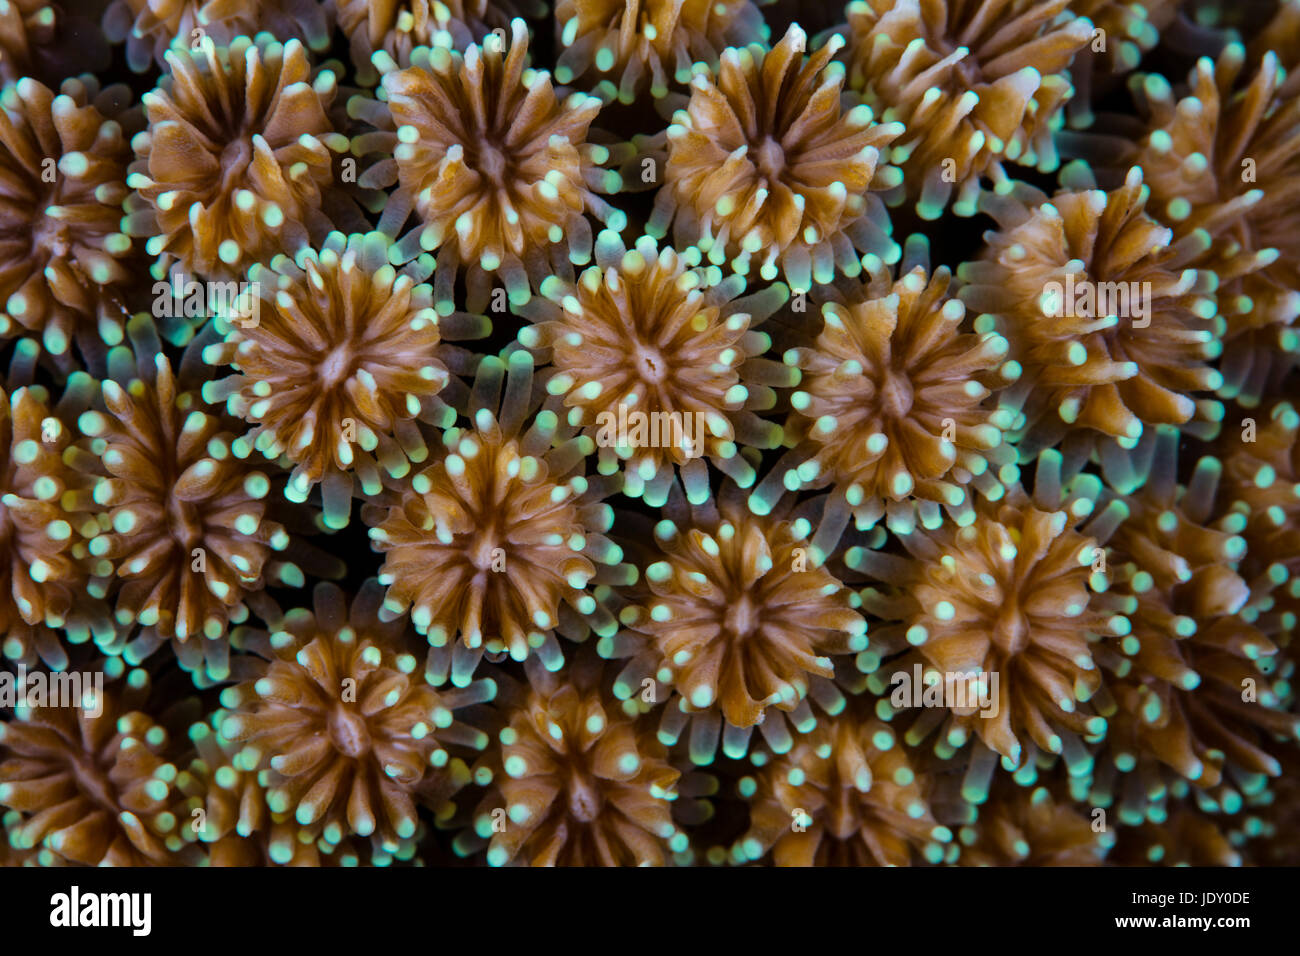 Details of Coral Polyps, Galaxea sp., Wakatobi, Celebes, Indonesia Stock Photo